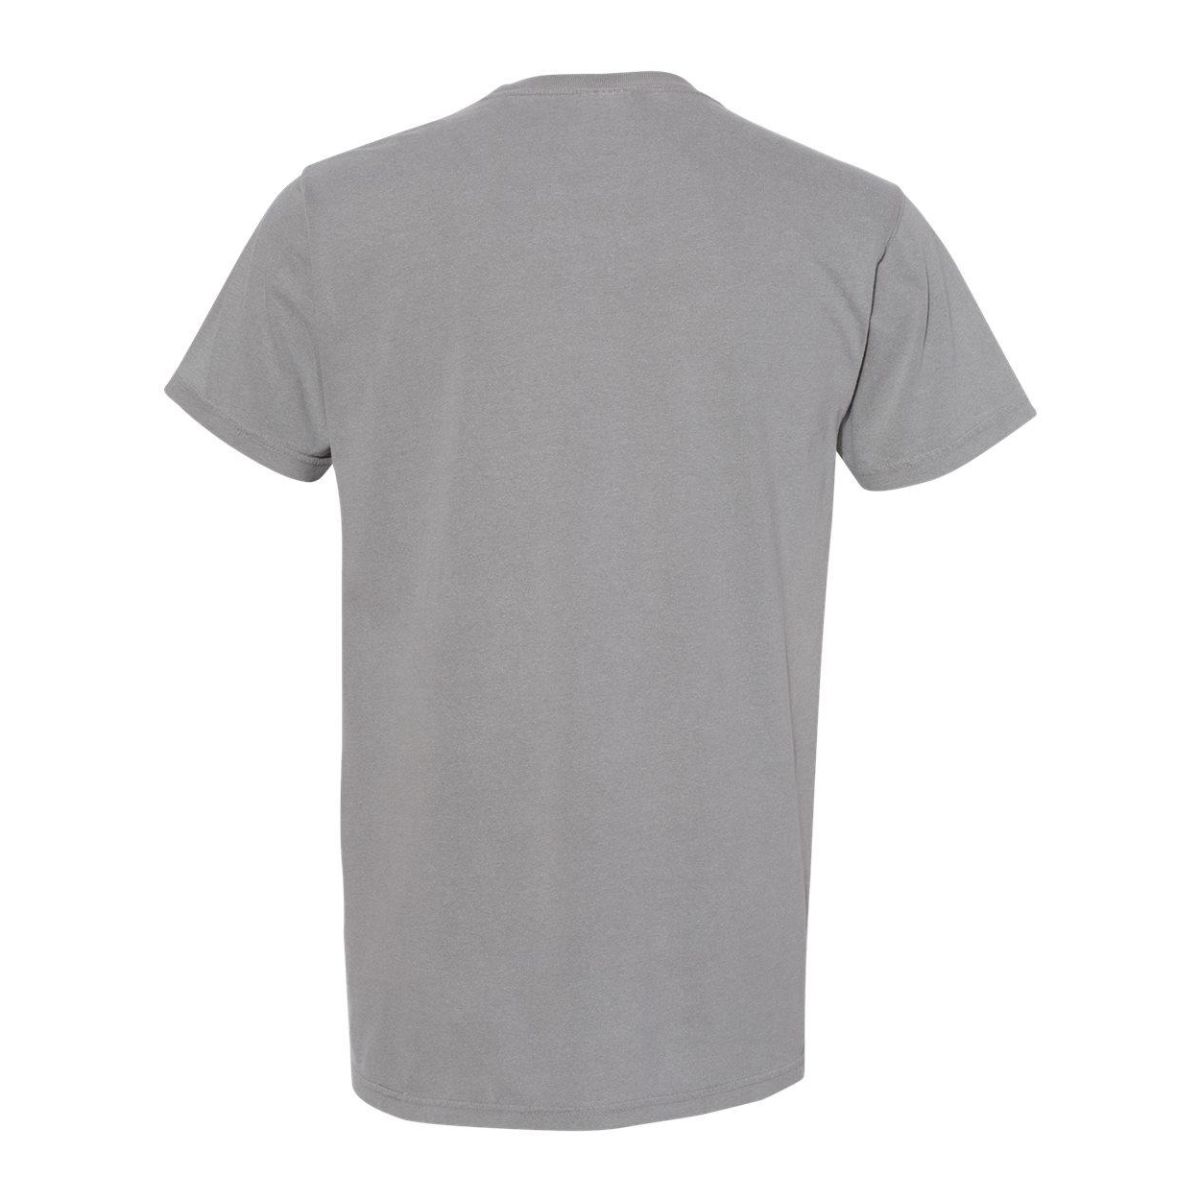 Легкая футболка, раскрашенная в готовом виде Comfort Colors, серый